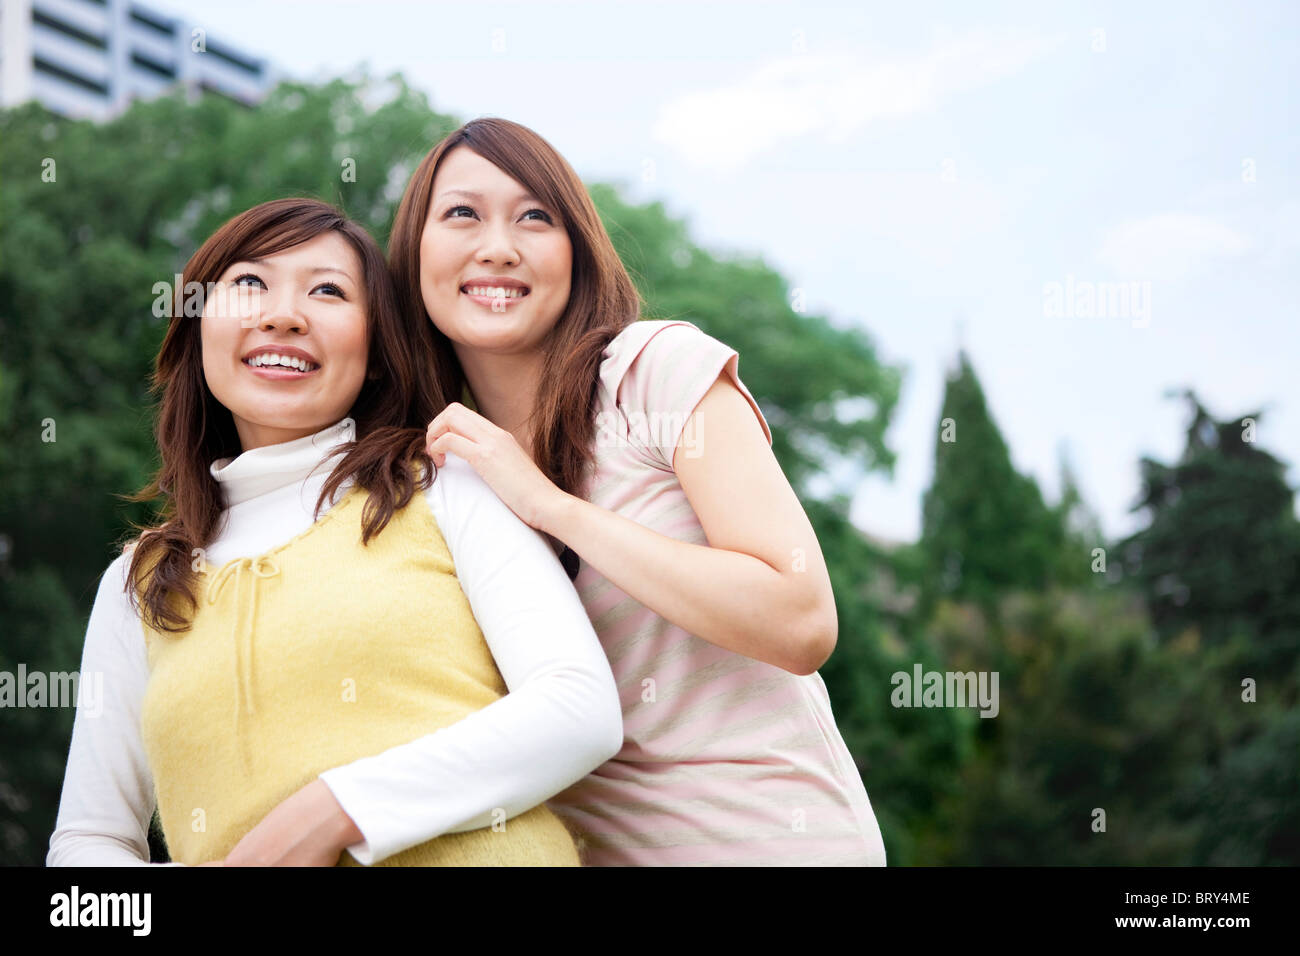 Deux jeunes femmes smiling together Banque D'Images